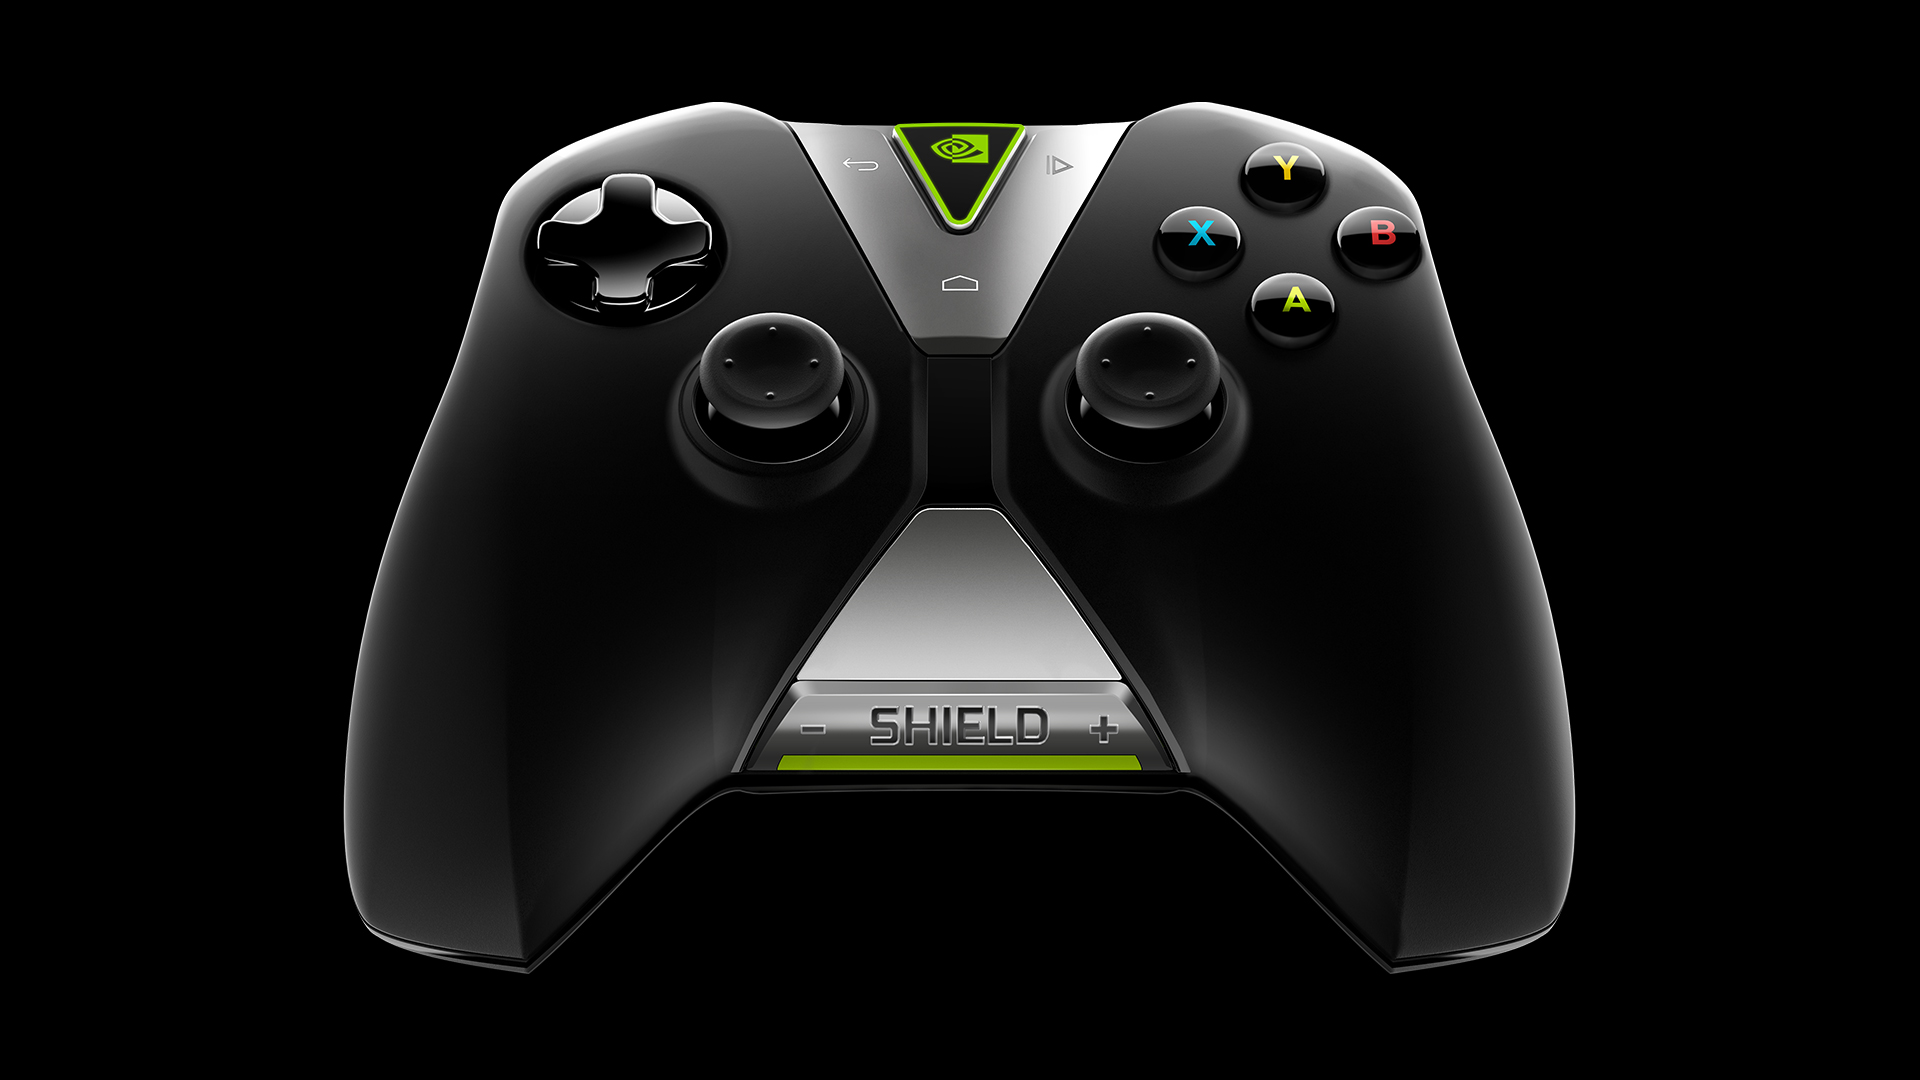 NVIDIA SHIELD コントローラーでは、十字キー、アナログジョイスティック、アクションボタン、LR ボタンを駆使し、ゲームを精密にコントロールできます。